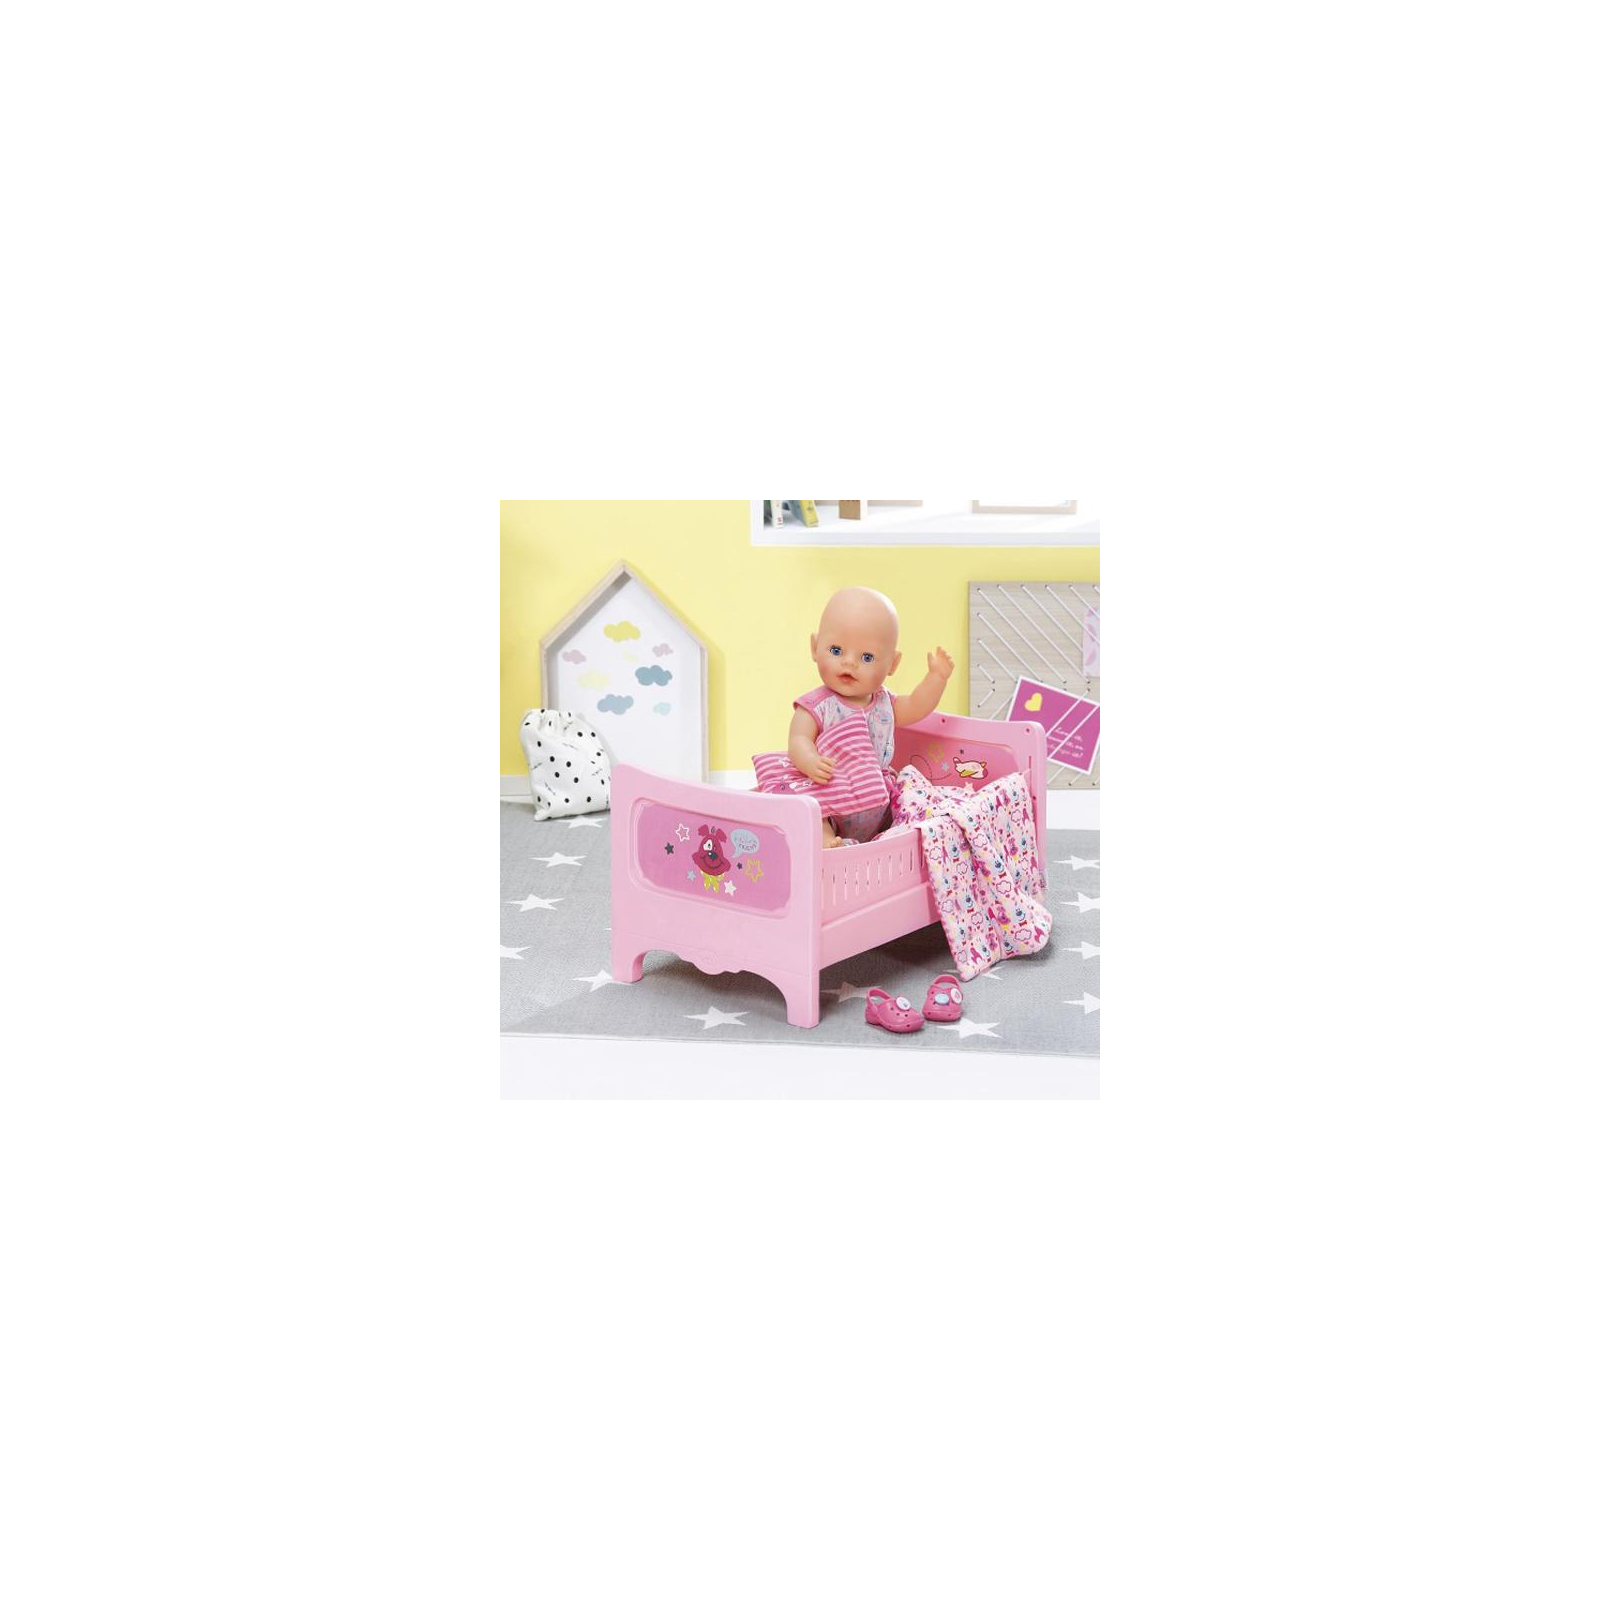 Аксессуар к кукле Zapf кроватка Сладкие сны (824399) изображение 5